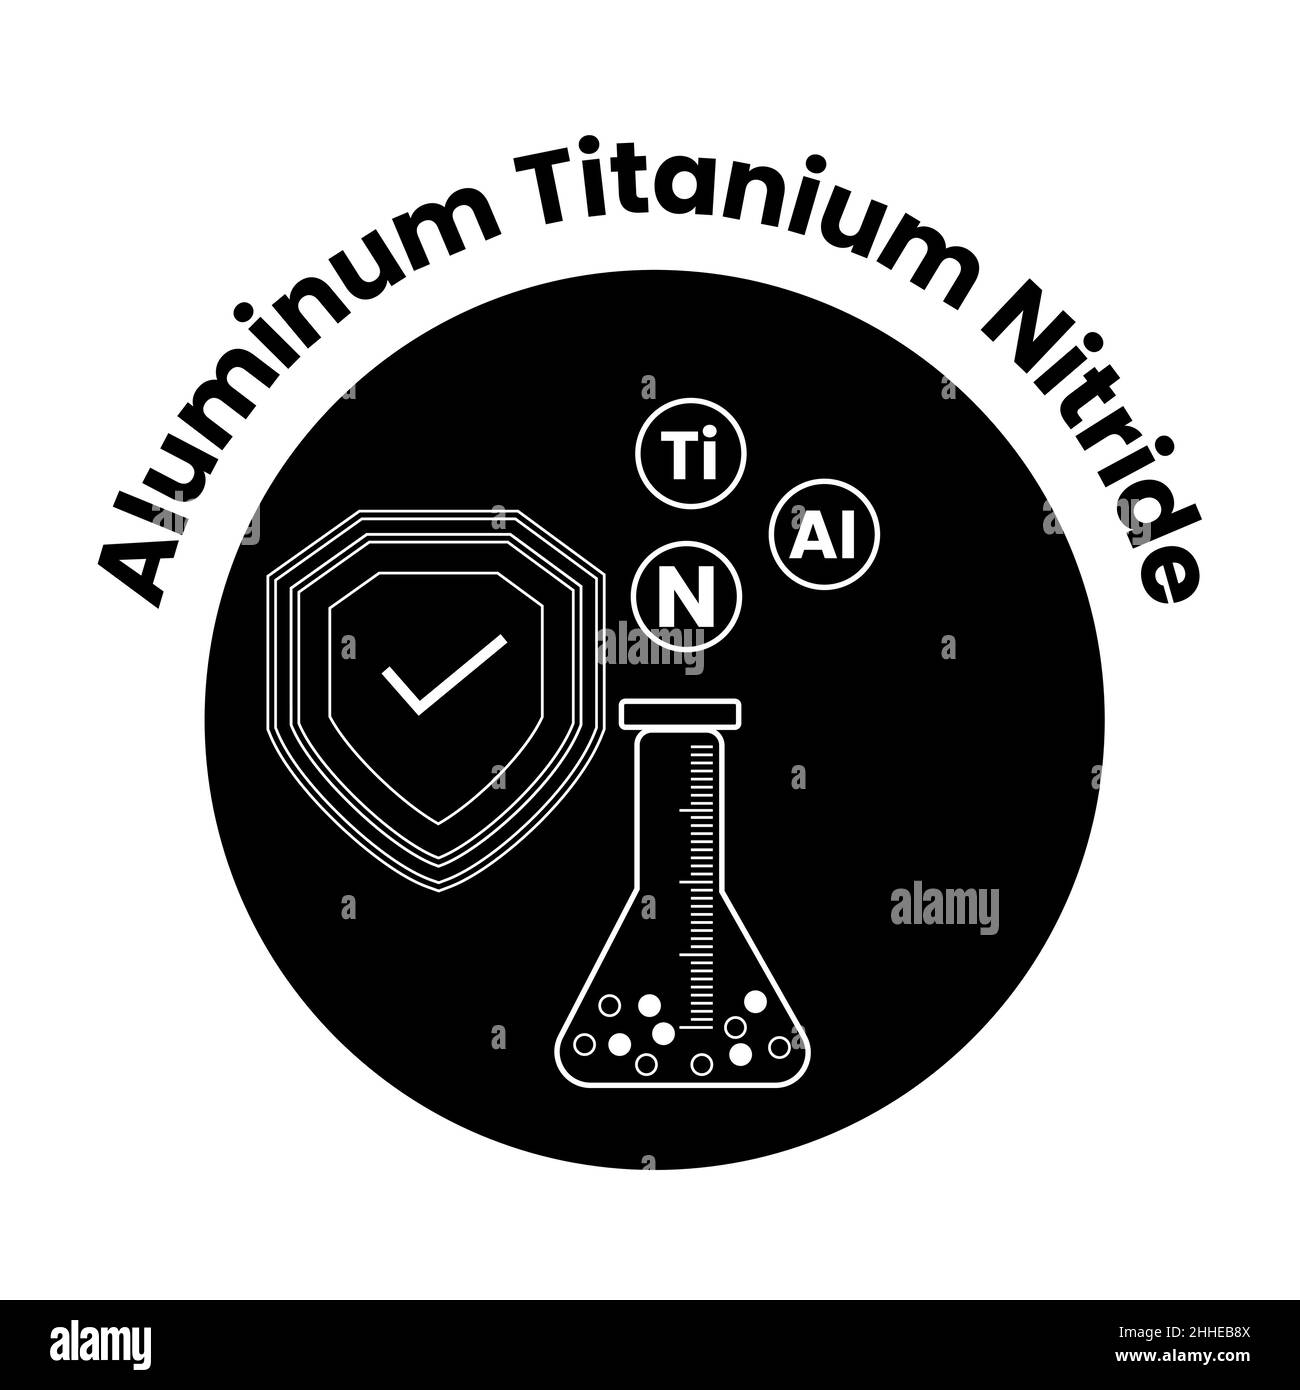 Aluminium Titanium Nitride (AlTiN) vector logo Stock Vector